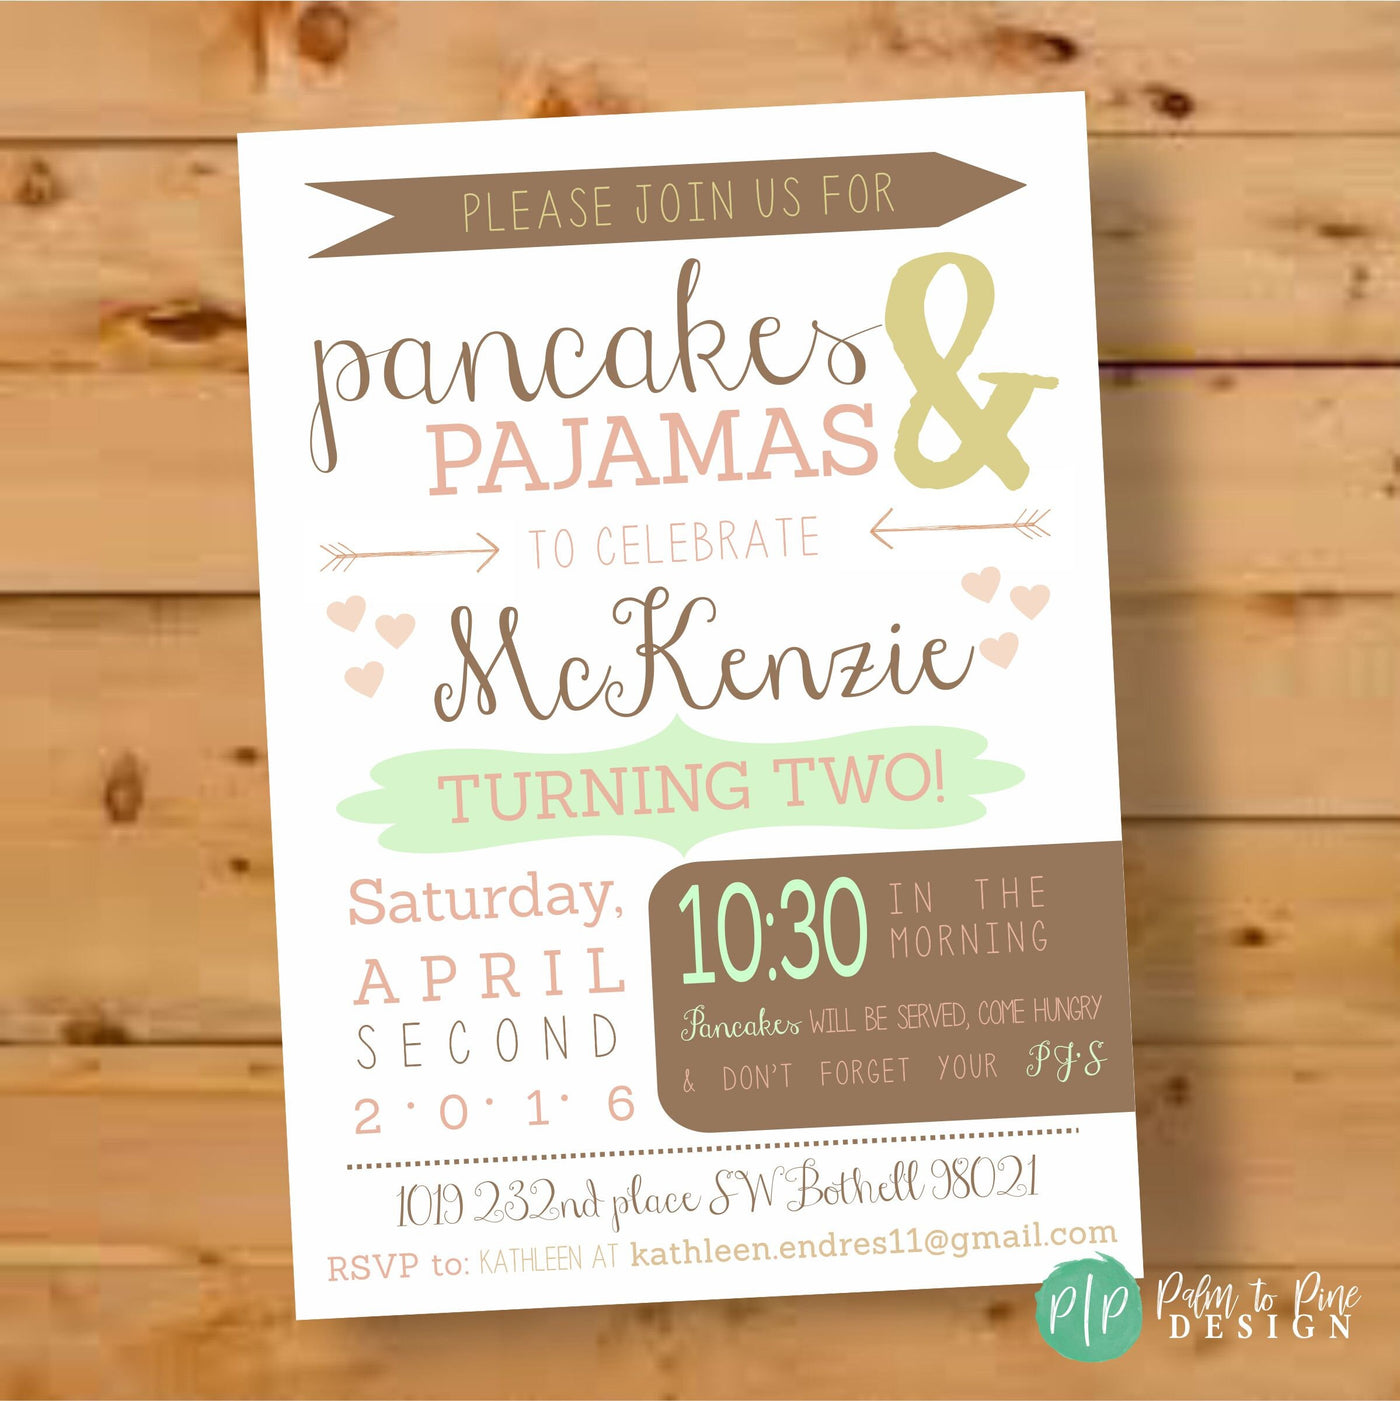 Pancakes and Pajamas Birthday Invitation, Pajamas & Pancakes Birthday Invite, Pancakes and PJ's Birthday, Birthday Invitation, Pajamas Bday